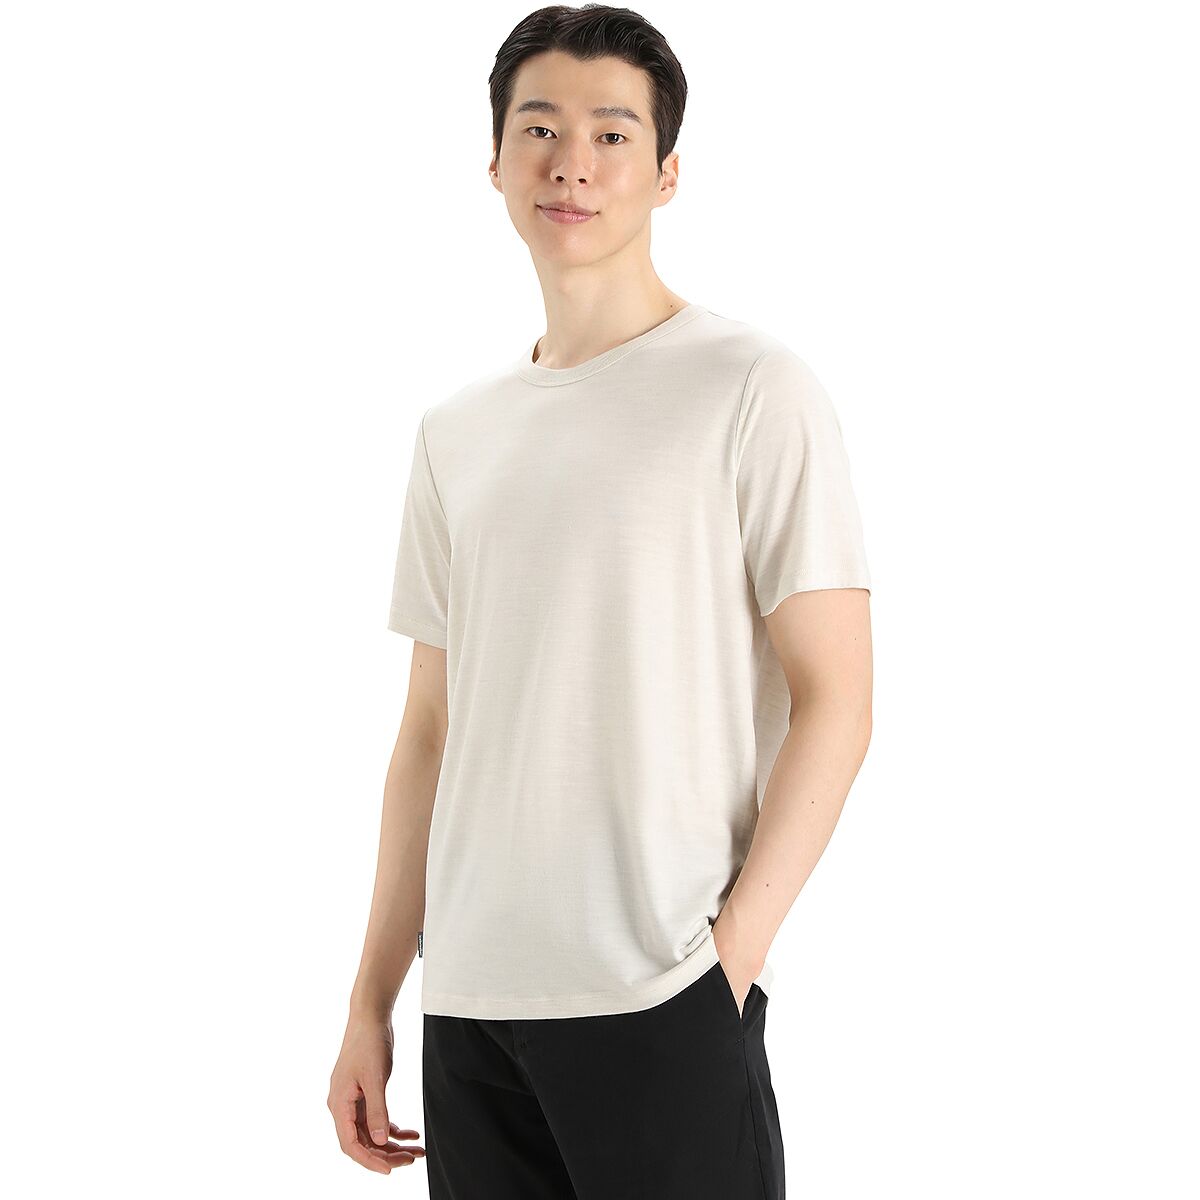 ICL Jersey Short-Sleeve T-Shirt - Men